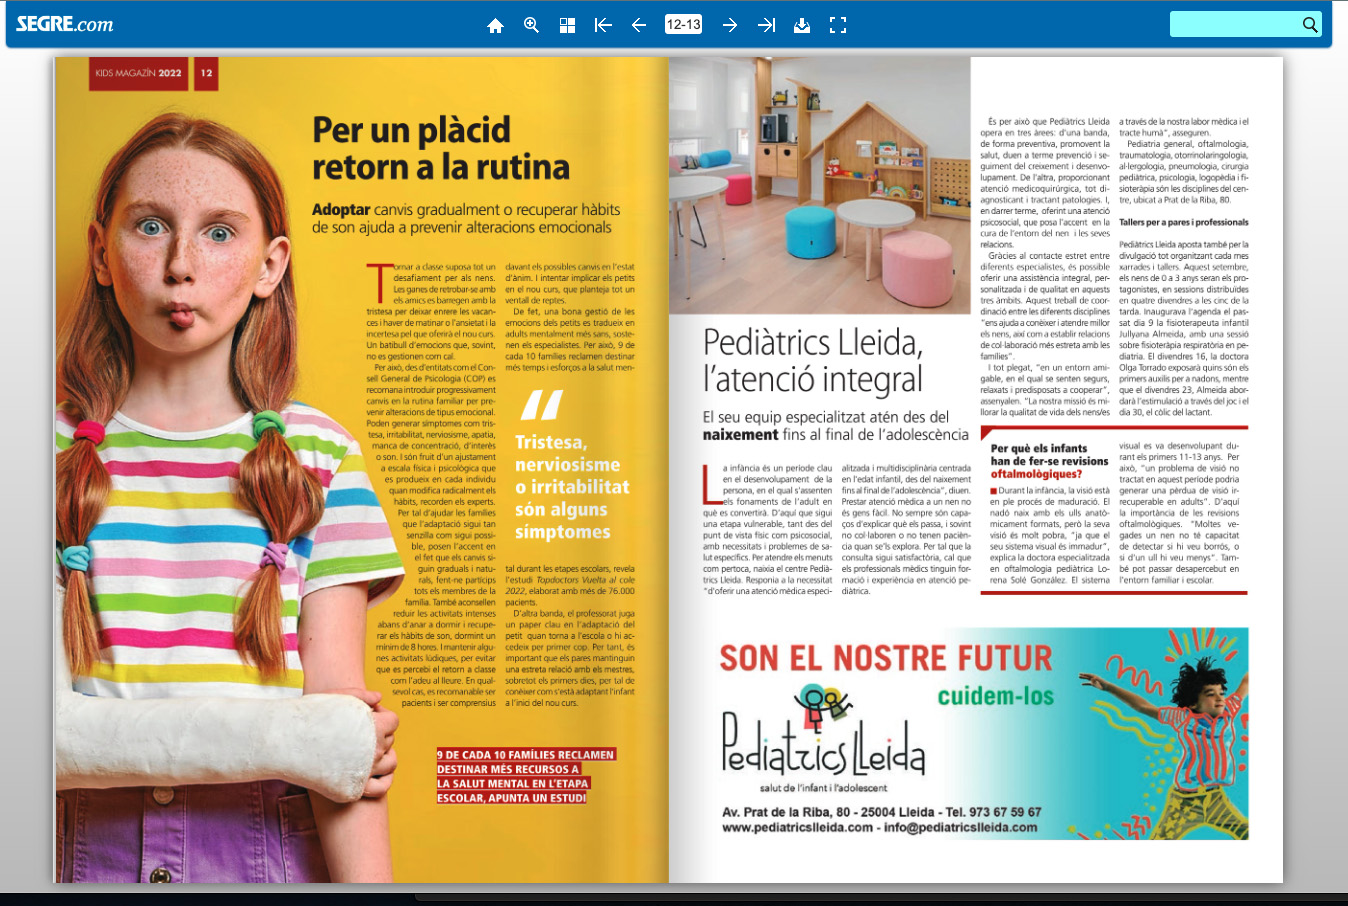 Magazin Kid página 13: pediatrics lleida l'atenció integral